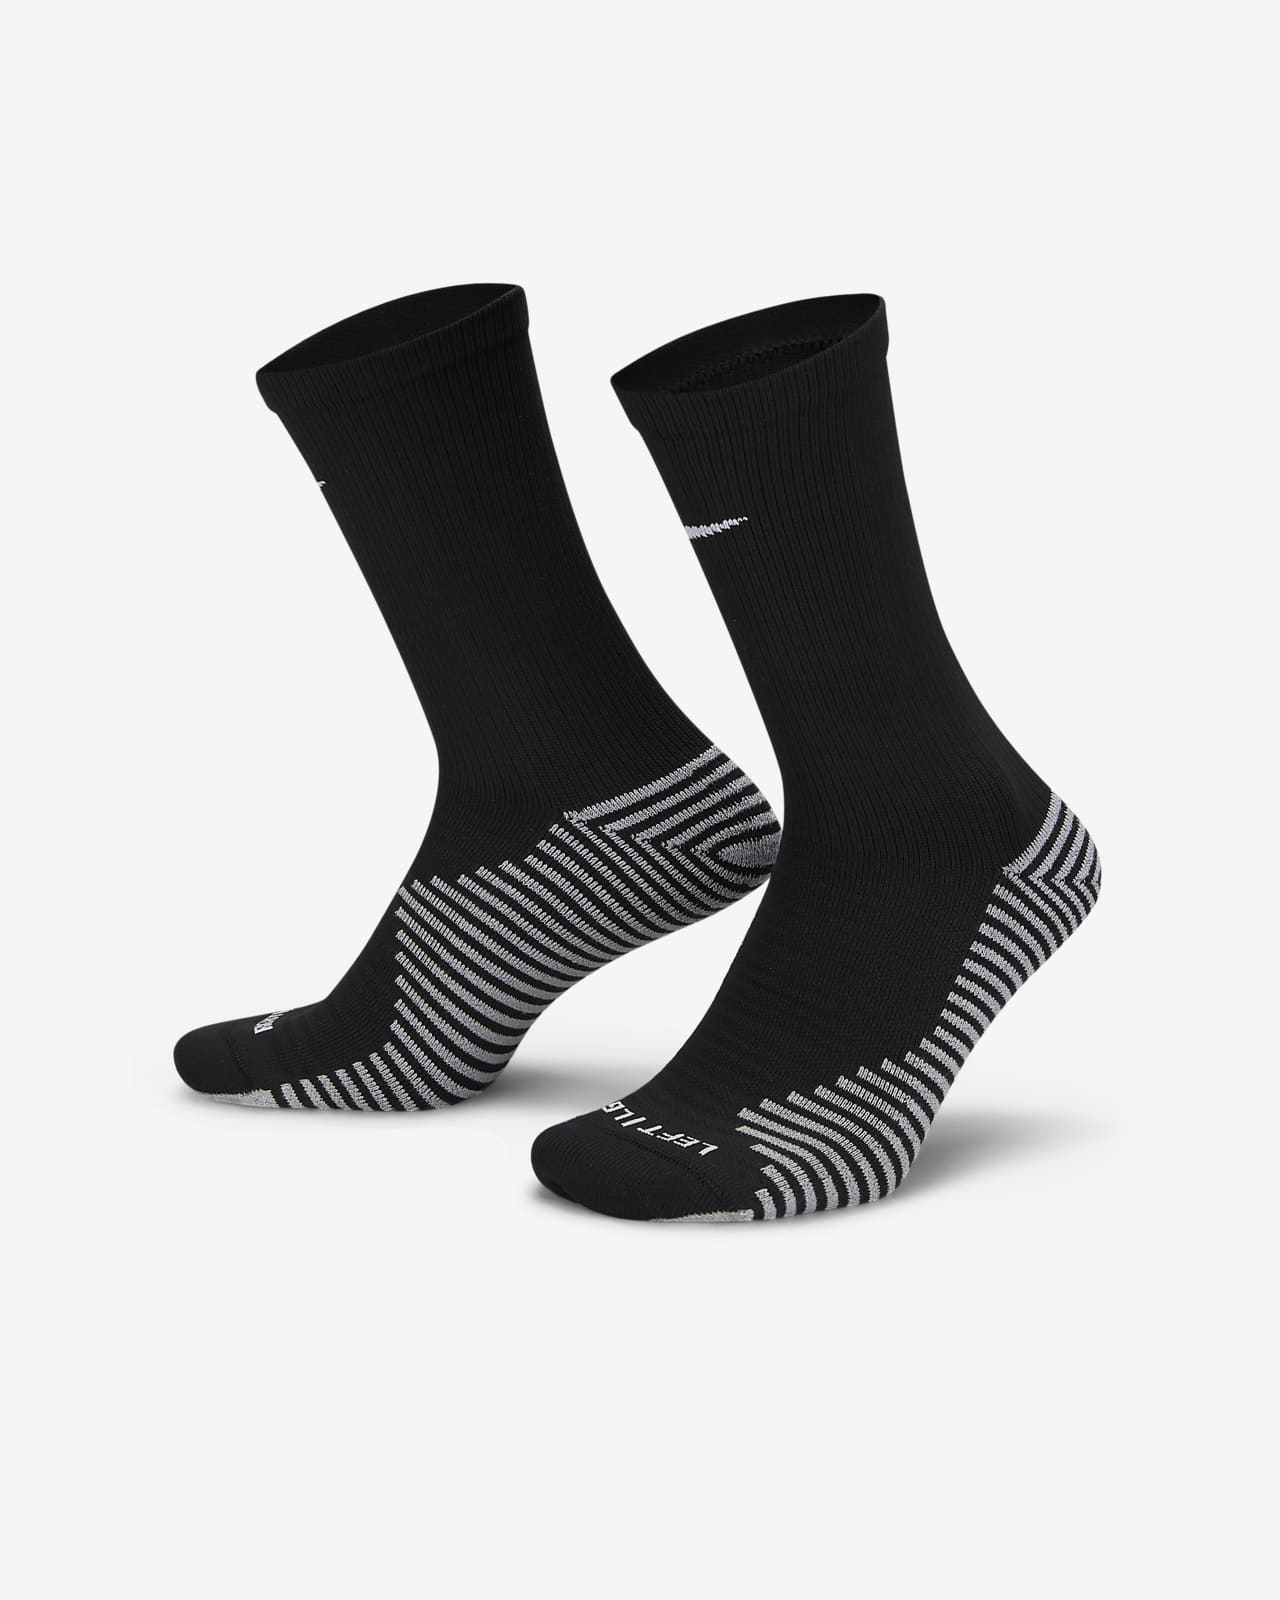 Ποδοσφαιρικές κάλτσες μεσαίου ύψους Nike Strike